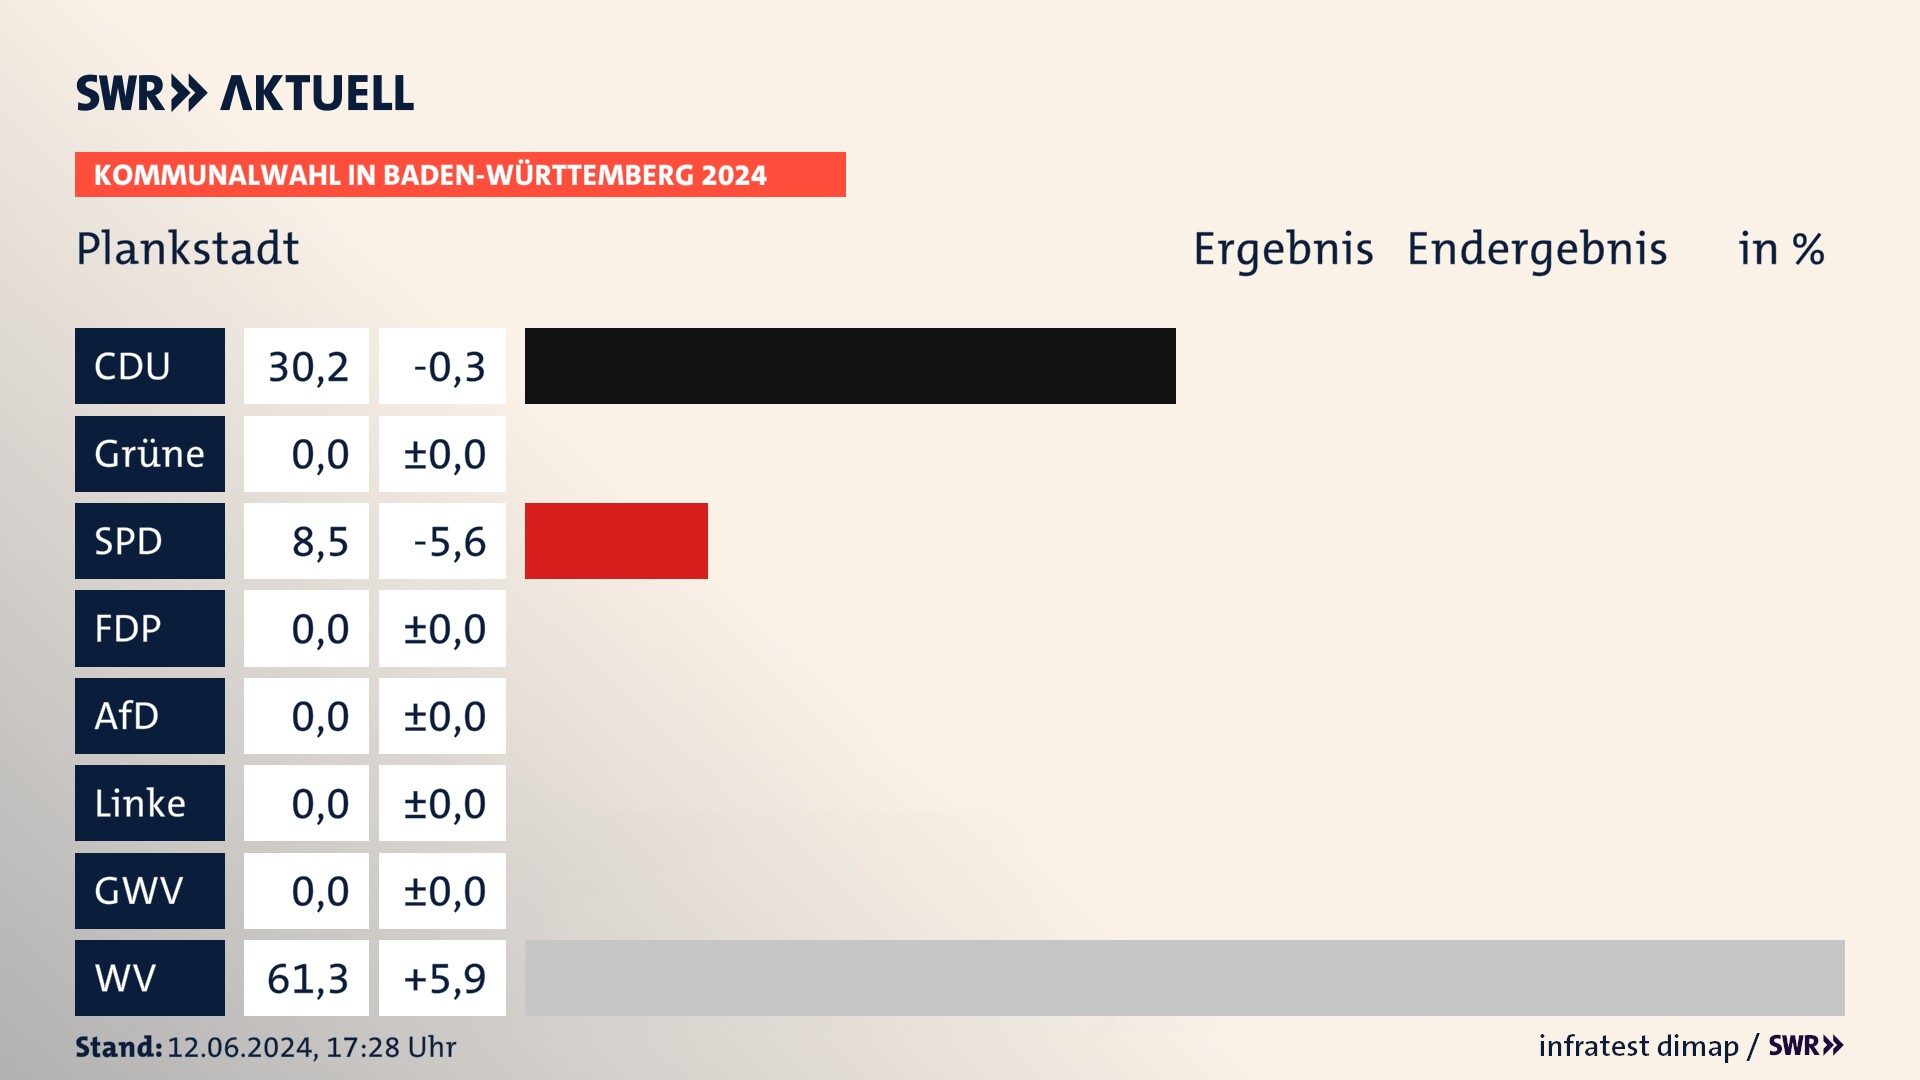 Kommunalwahl 2024 Endergebnis Zweitstimme für Plankstadt. In Plankstadt erzielt die CDU 30,2 Prozent der gültigen  Stimmen. Die SPD landet bei 8,5 Prozent. Die Wählervereinigungen erreichen 61,3 Prozent.